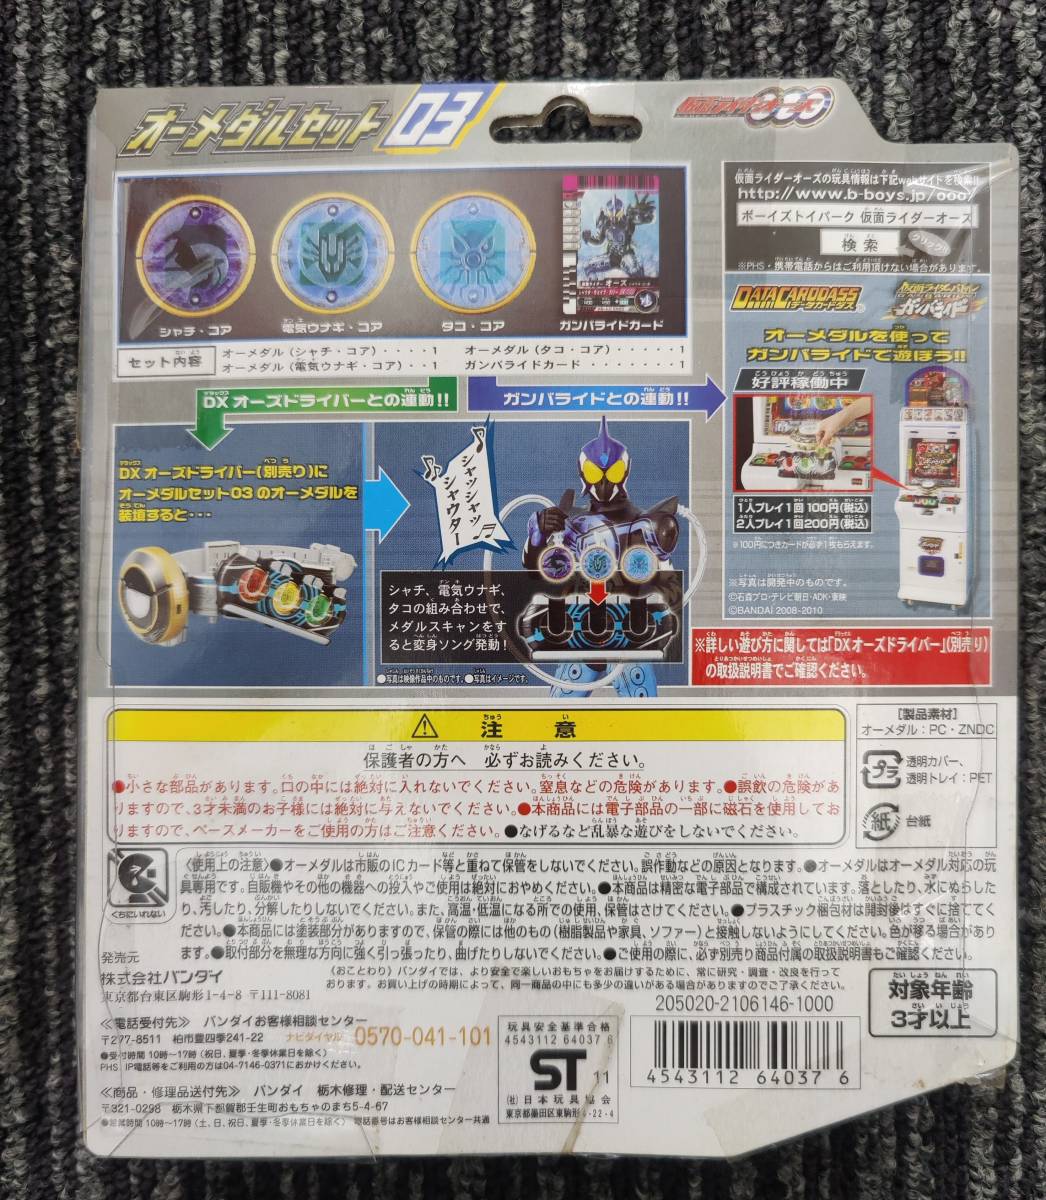  не использовался товар Kamen Rider o-zo- медаль комплект 03 новый товар автомобиль uta combo 